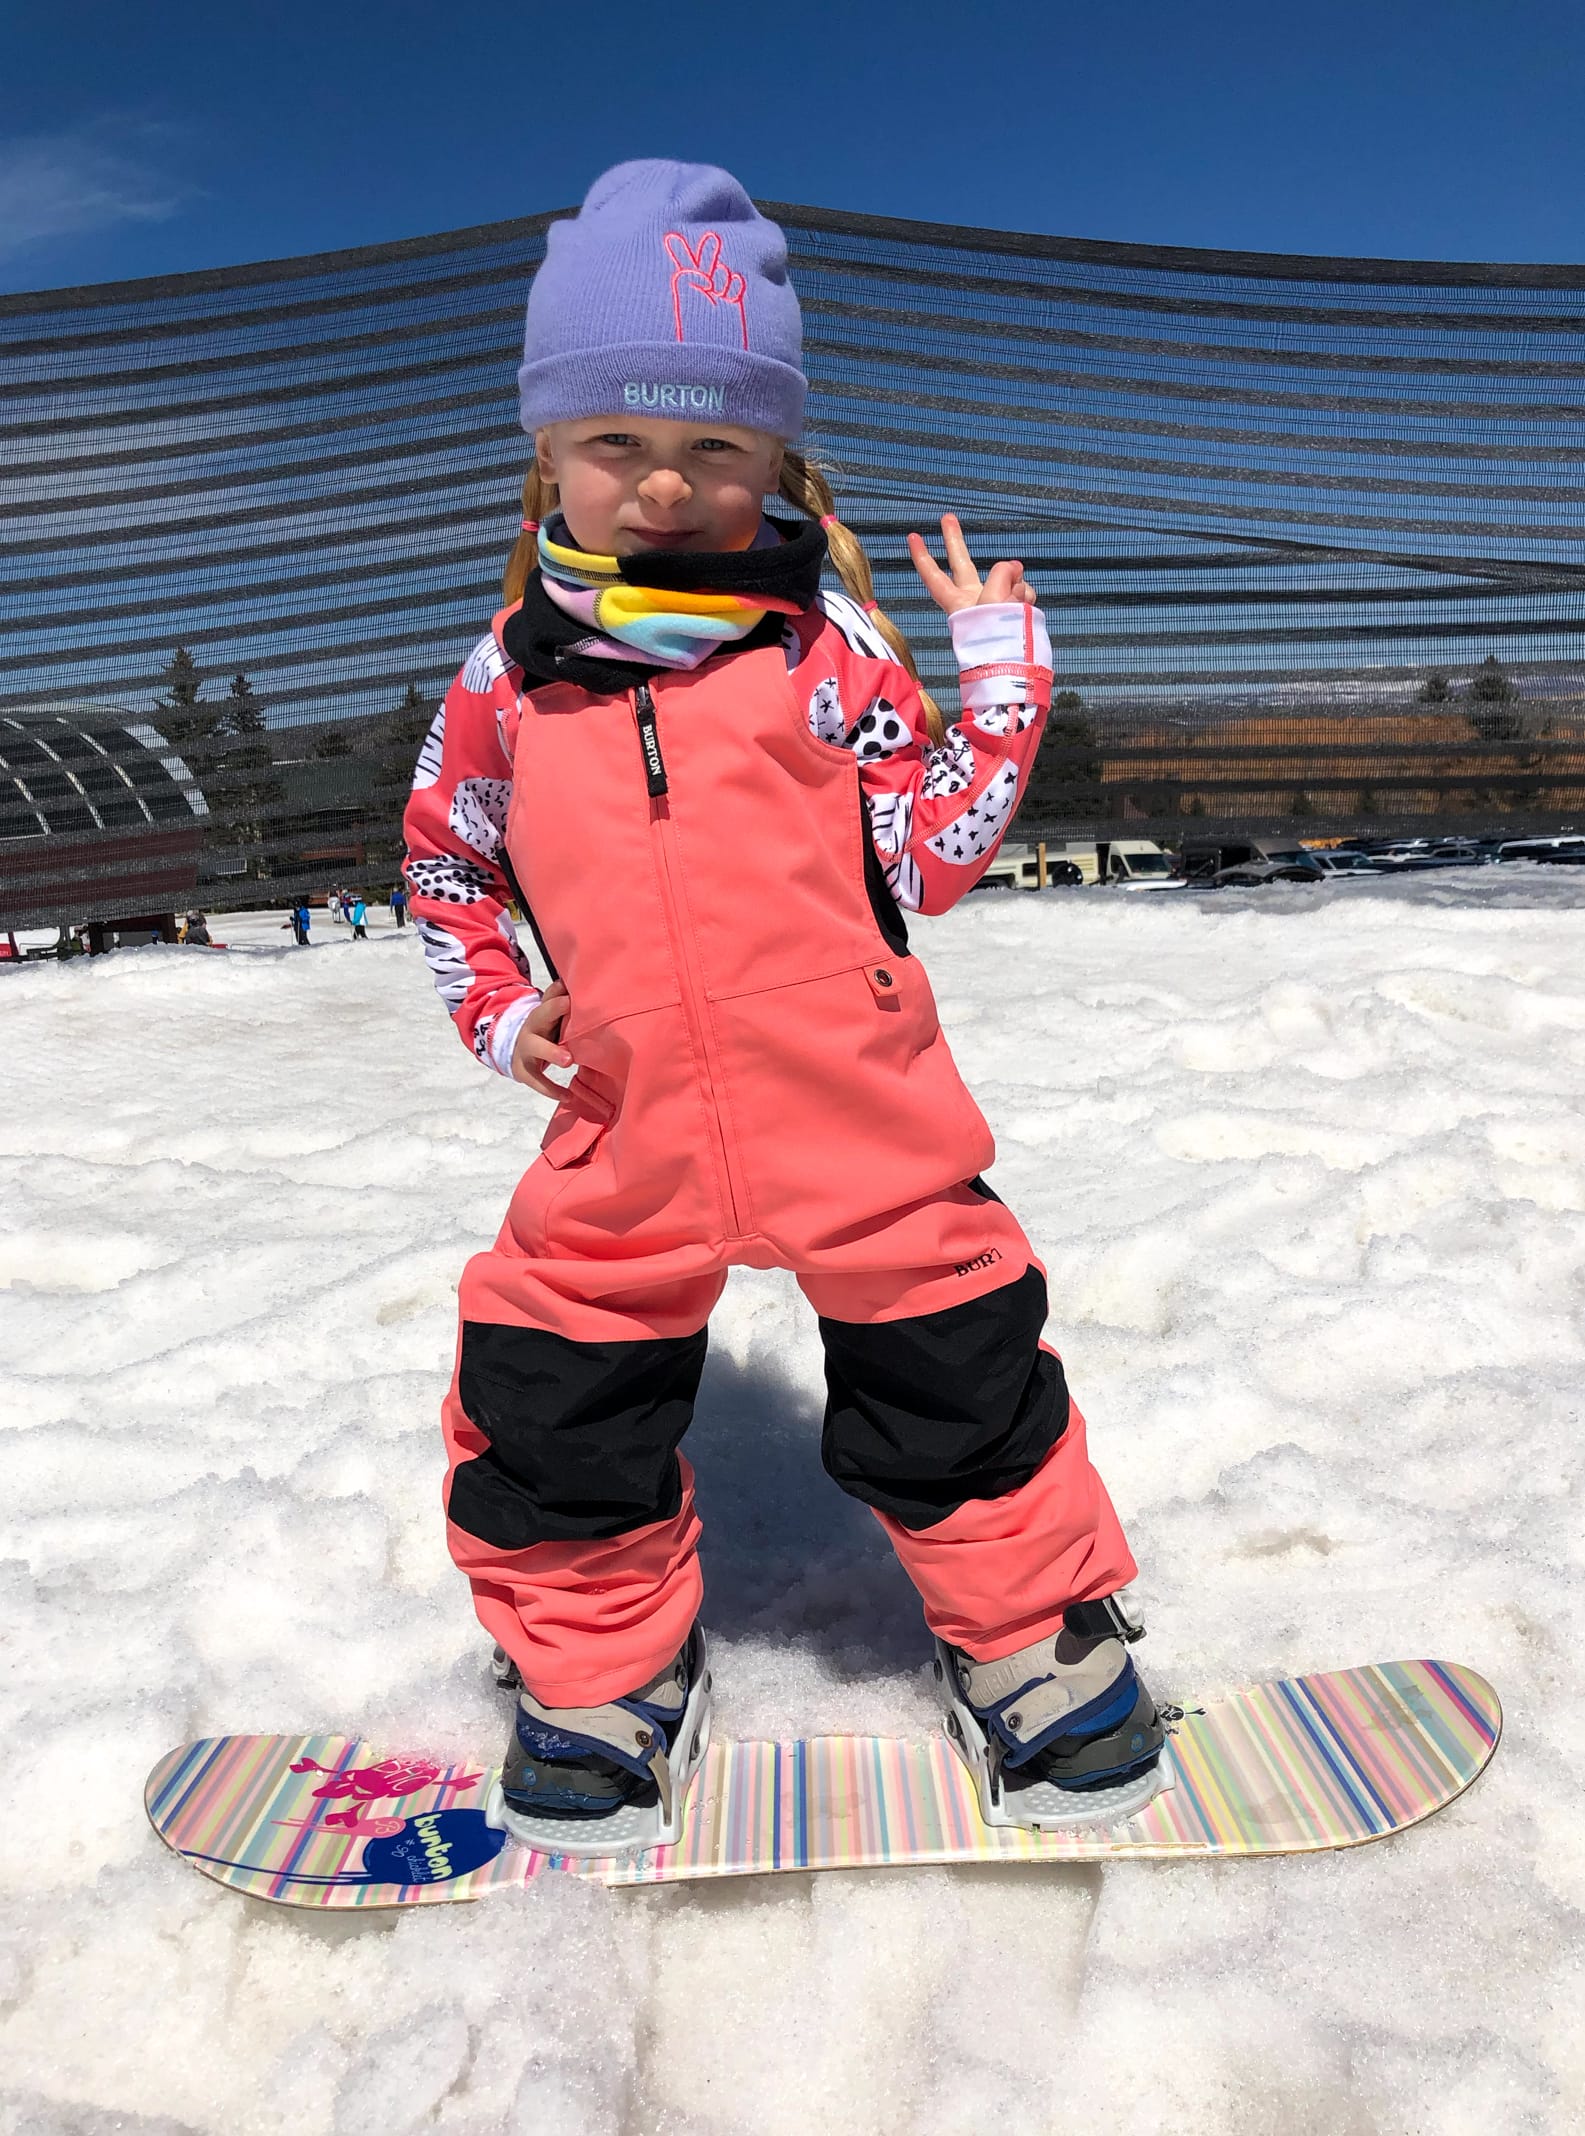 Details about   Burton Toddler one piece Infant Snow Suit Overalls Winter Suit Ski Suit New 